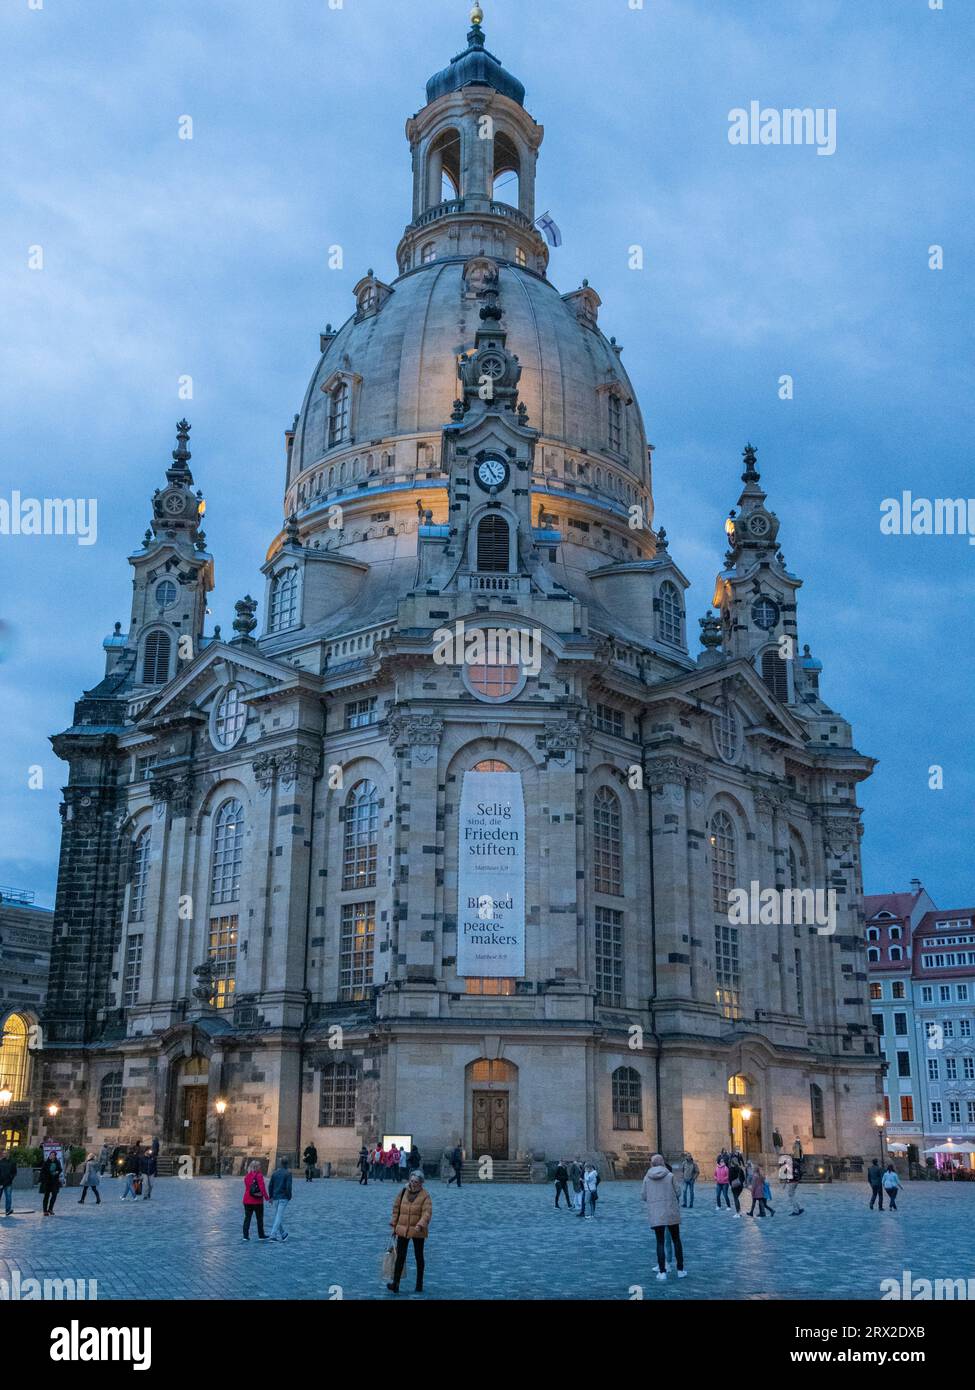 La Frauenkirche di Dresda (Chiesa di nostra Signora), una chiesa luterana ricostruita tra il 1994 e il 2005, Dresda, Sassonia, Germania, Europa Foto Stock